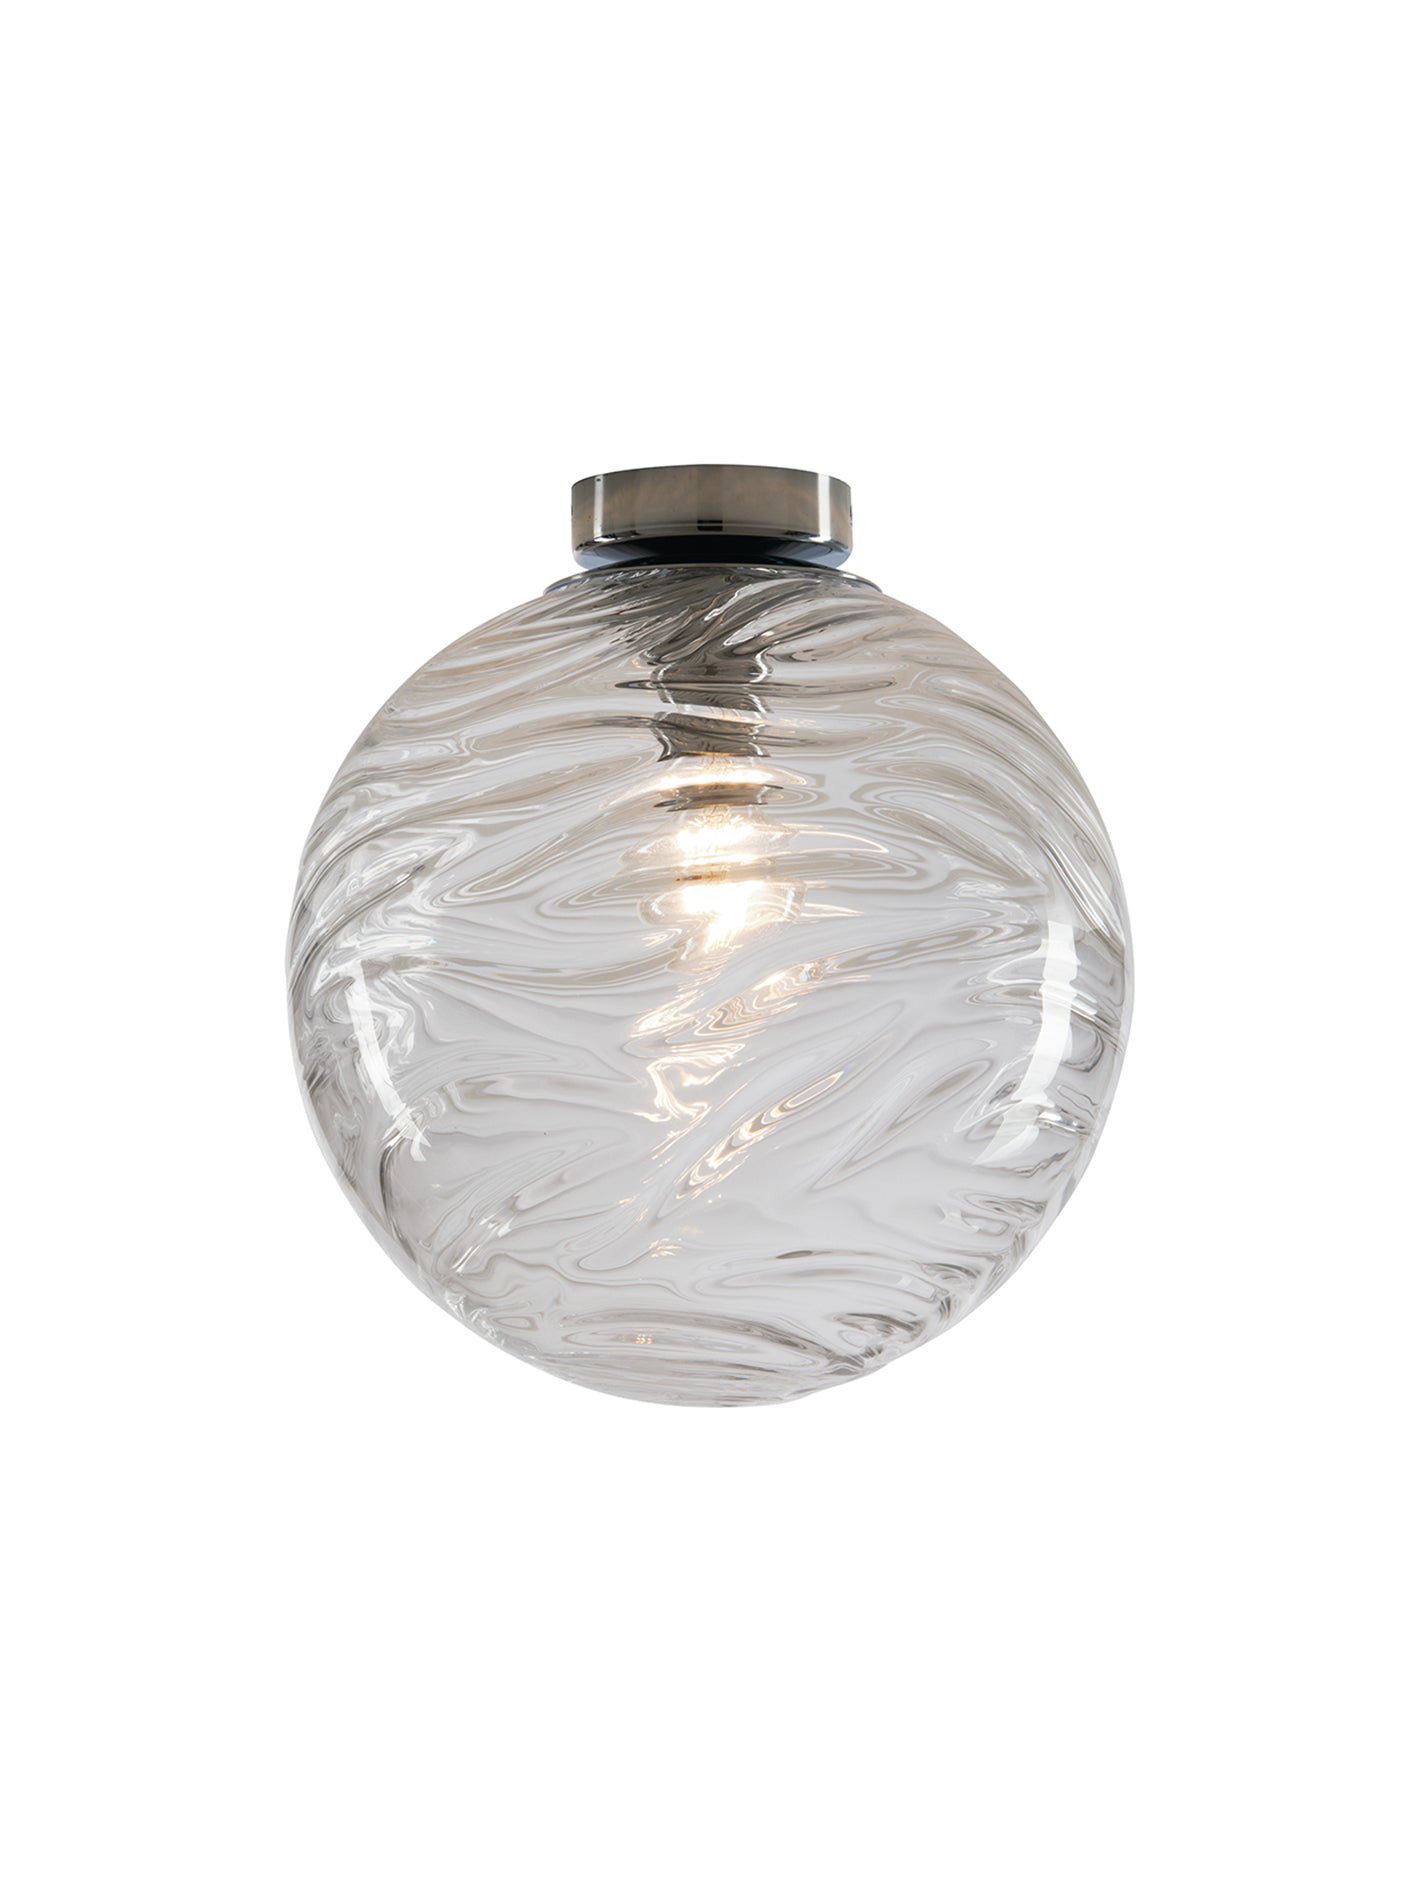 NEREIDE, lámpara de techo esférica de vidrio con ondas concéntricas